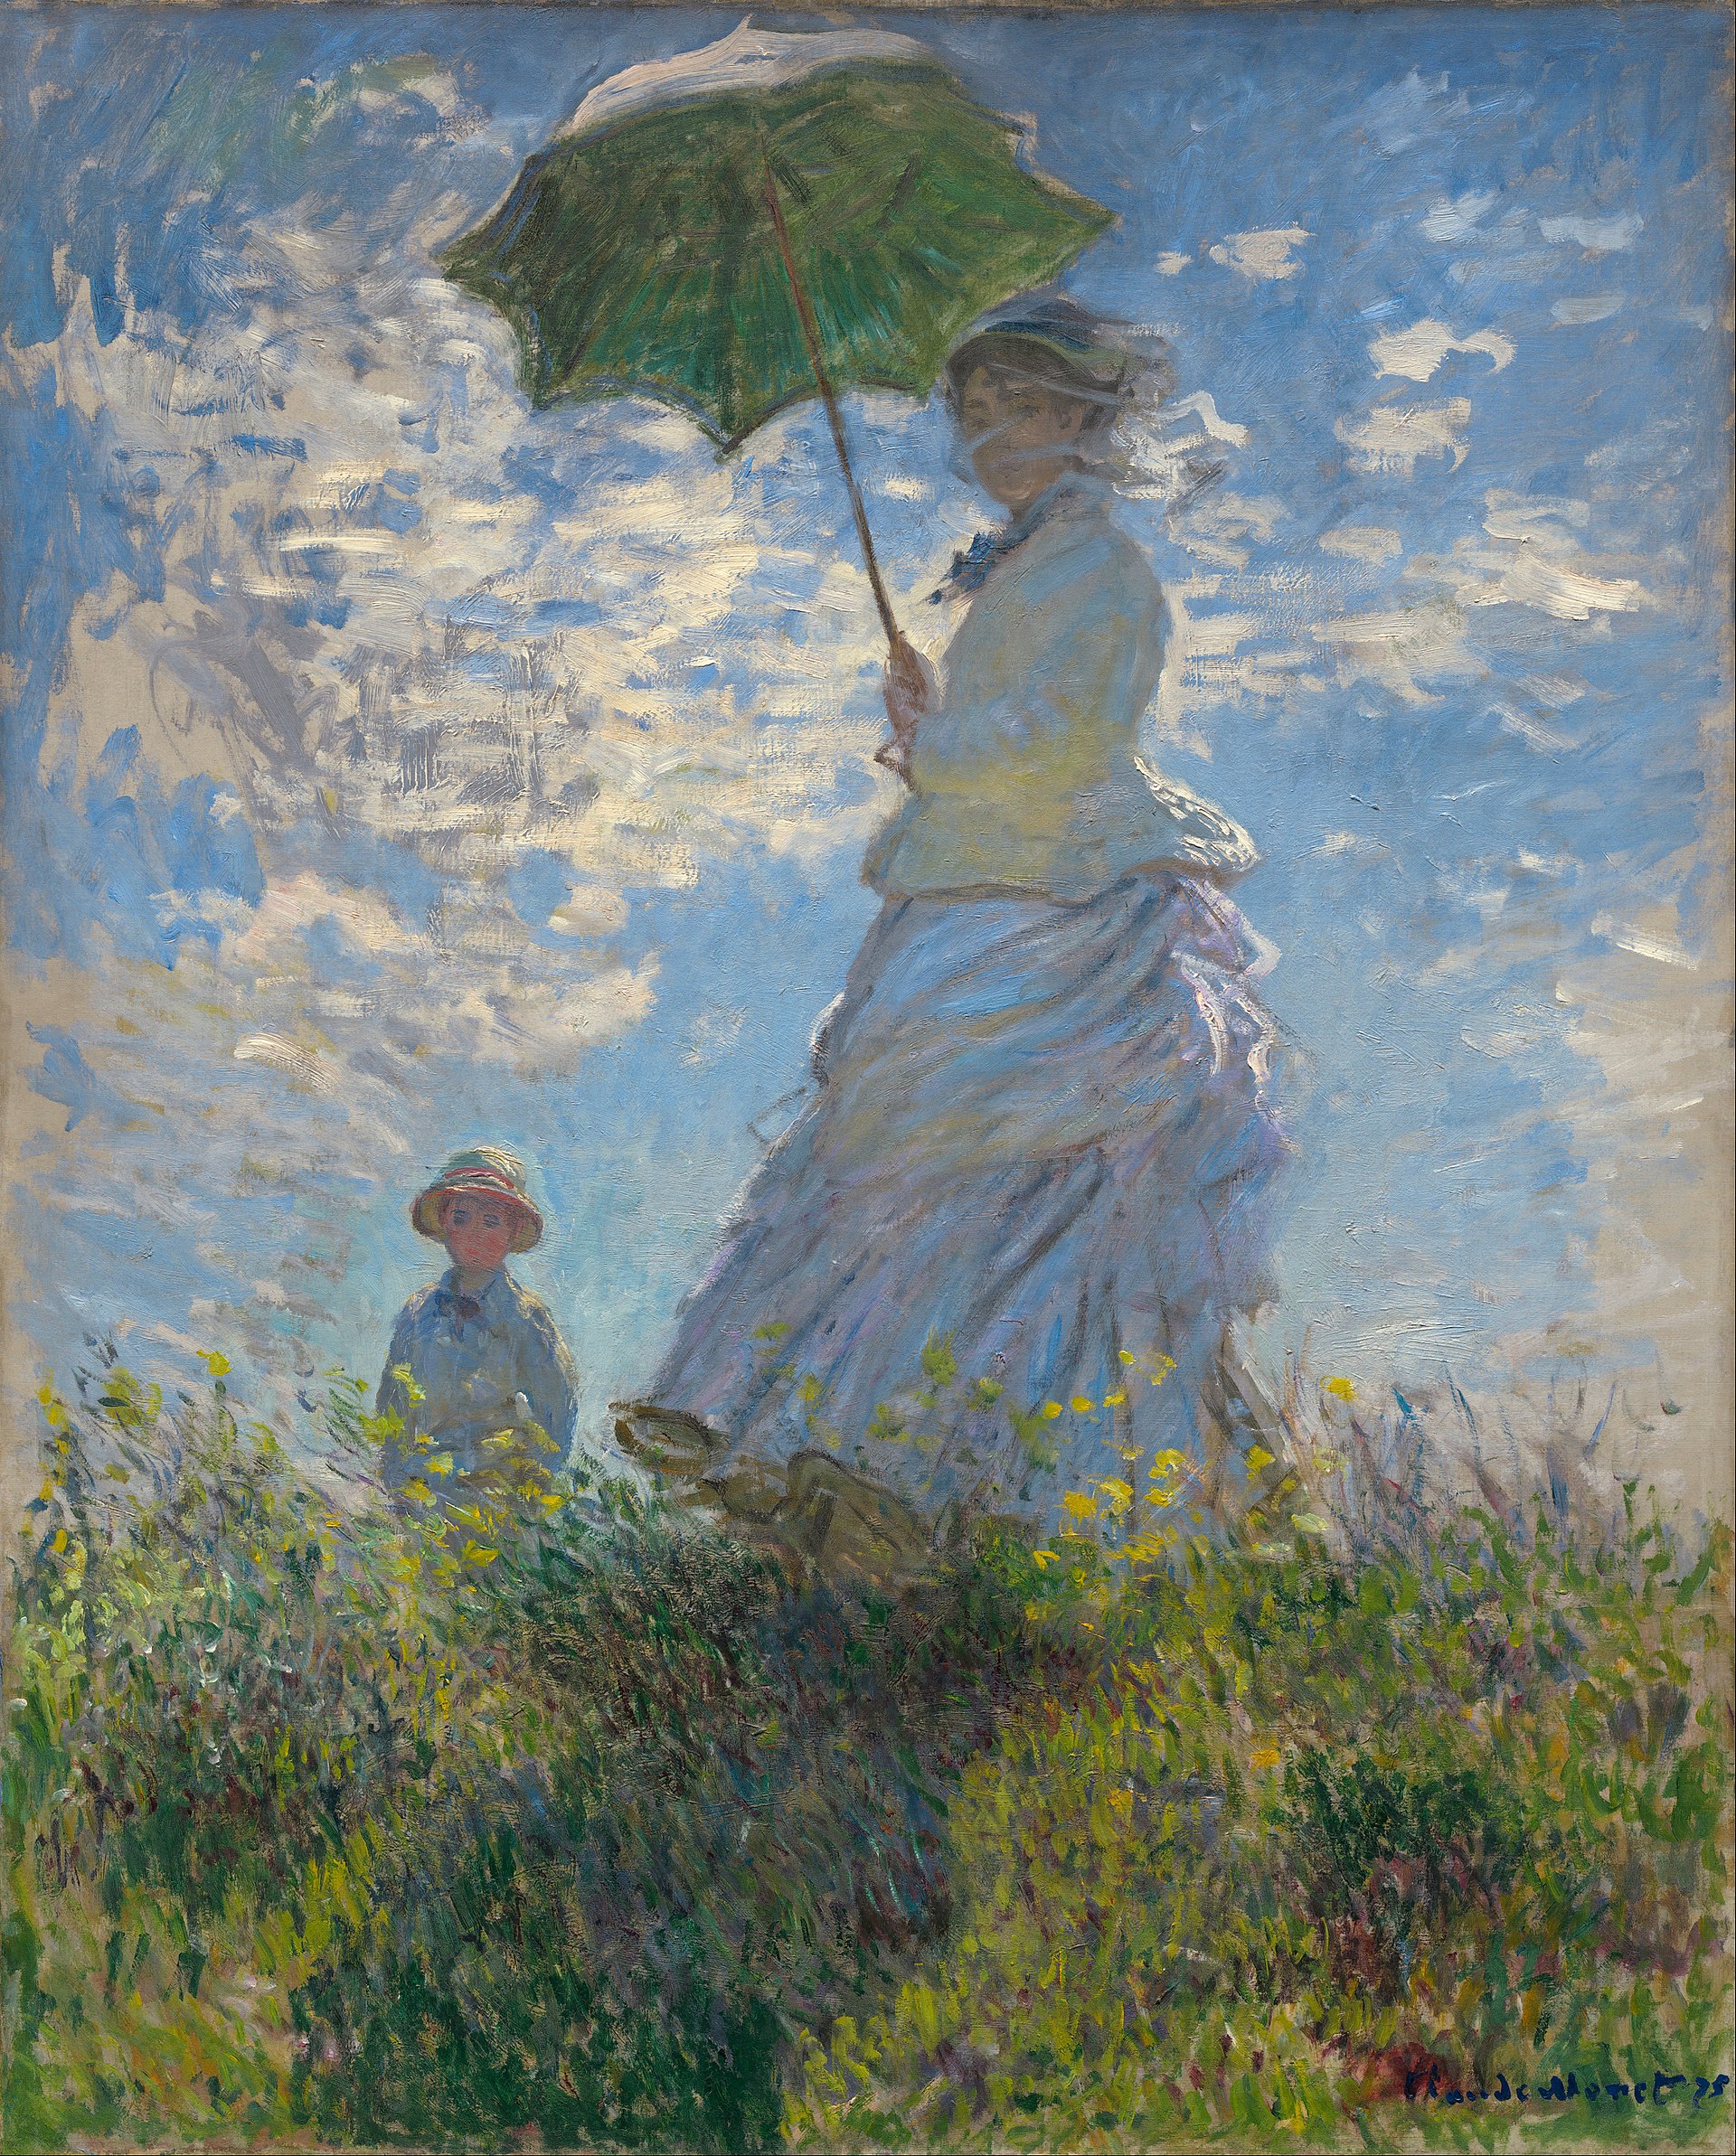 schilderij van Monet van een vrouw met een jongen die een parasol vasthoudt